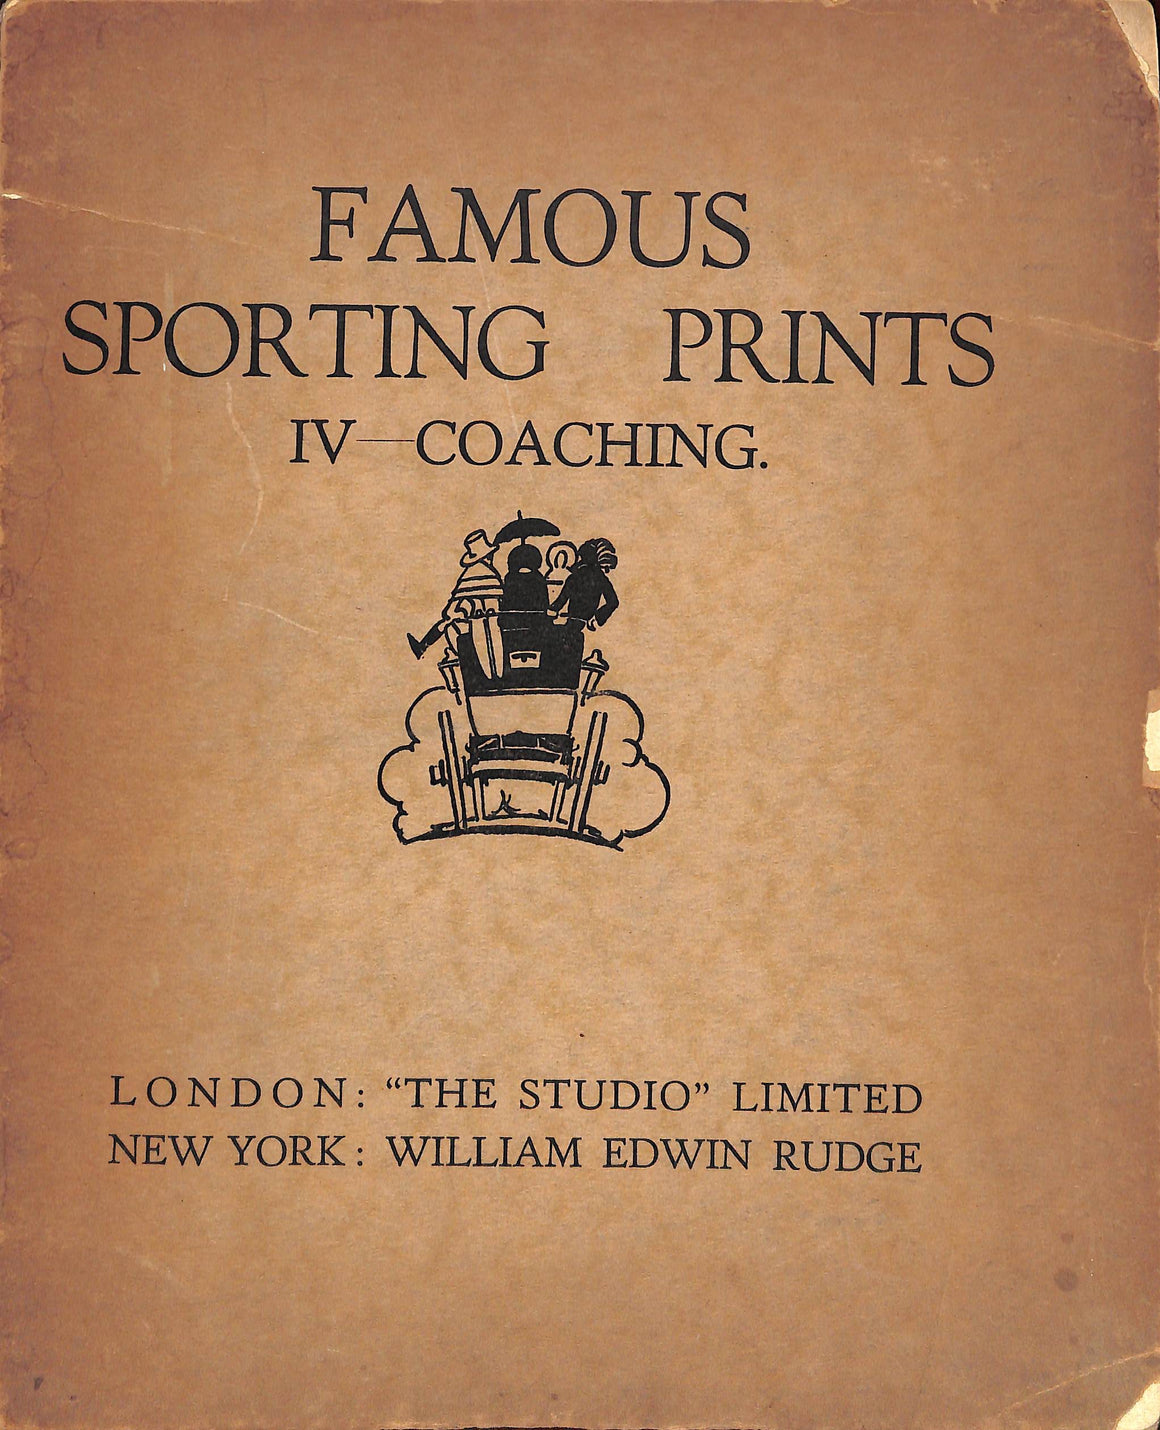 "Famous Coaching Prints IV - Coaching" 1927